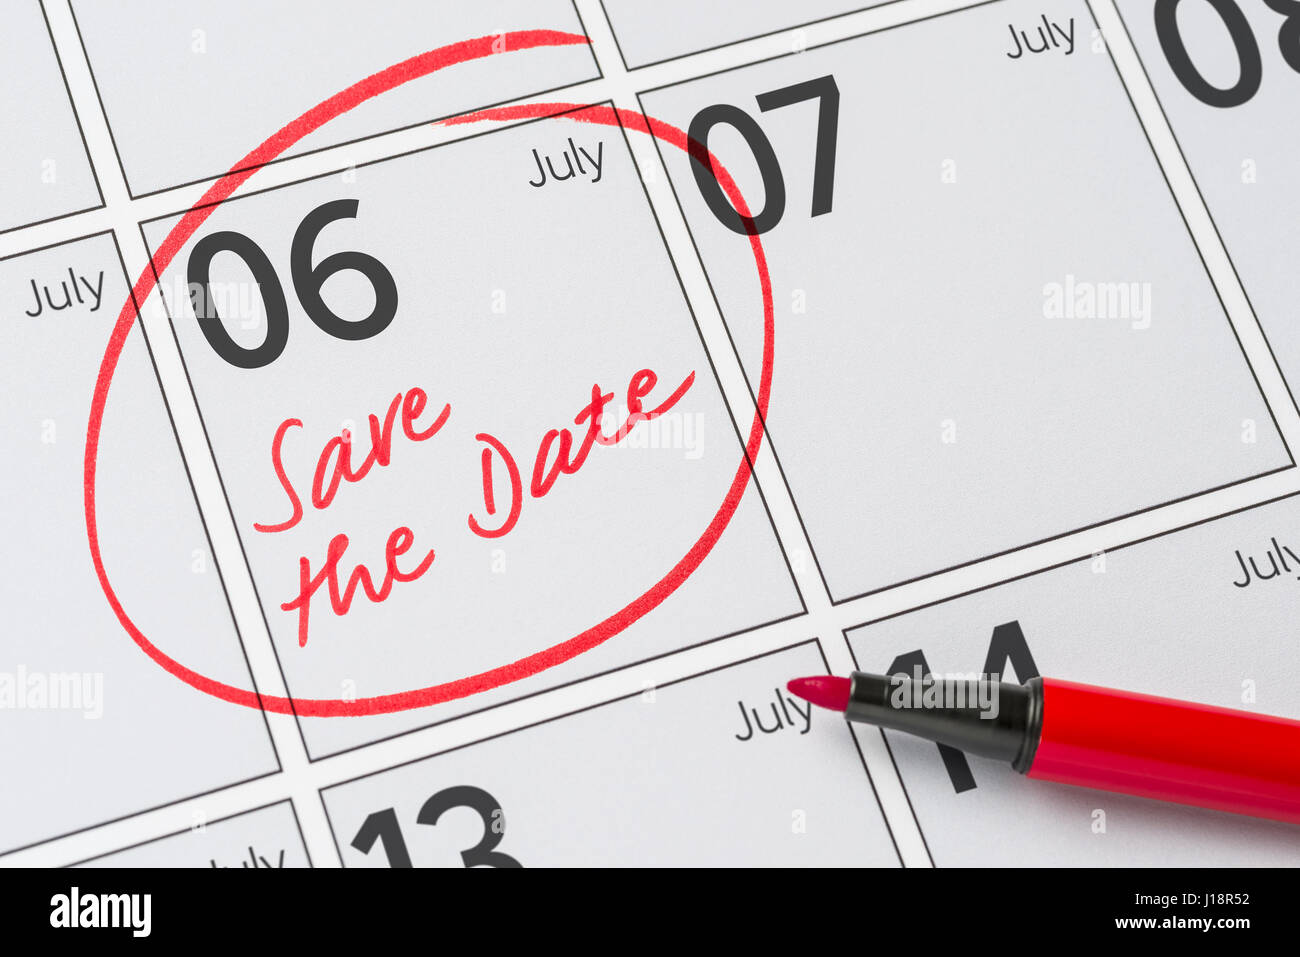 Enregistrer la date inscrite sur un calendrier - Juillet 06 Banque D'Images